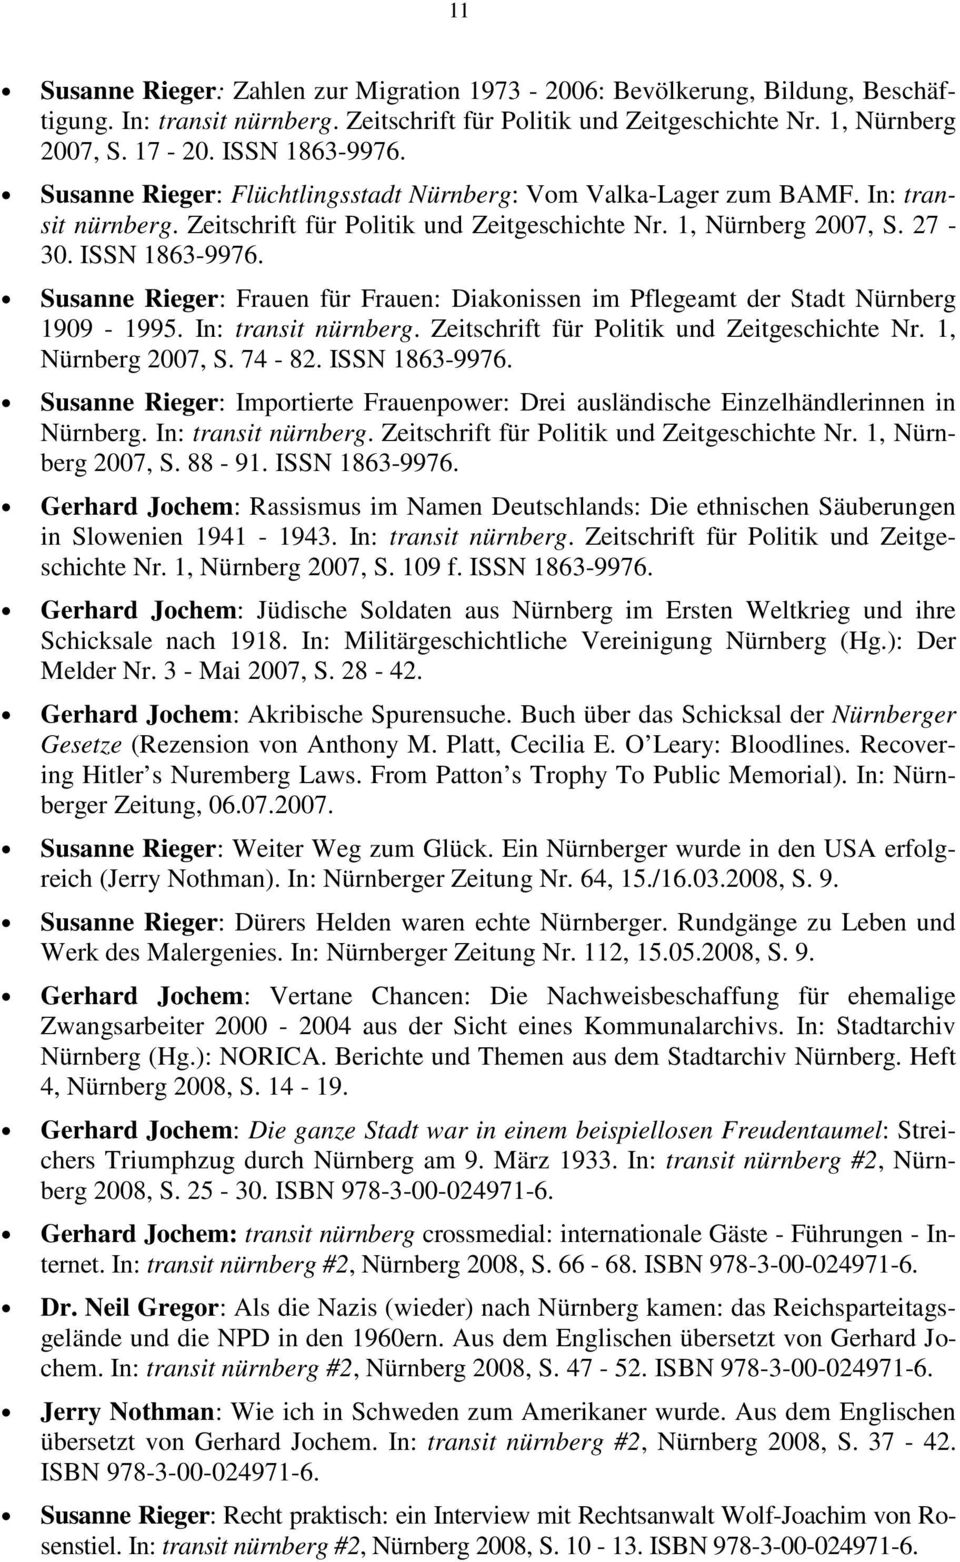 Susanne Rieger: Frauen für Frauen: Diakonissen im Pflegeamt der Stadt Nürnberg 1909-1995. In: transit nürnberg. Zeitschrift für Politik und Zeitgeschichte Nr. 1, Nürnberg 2007, S. 74-82.